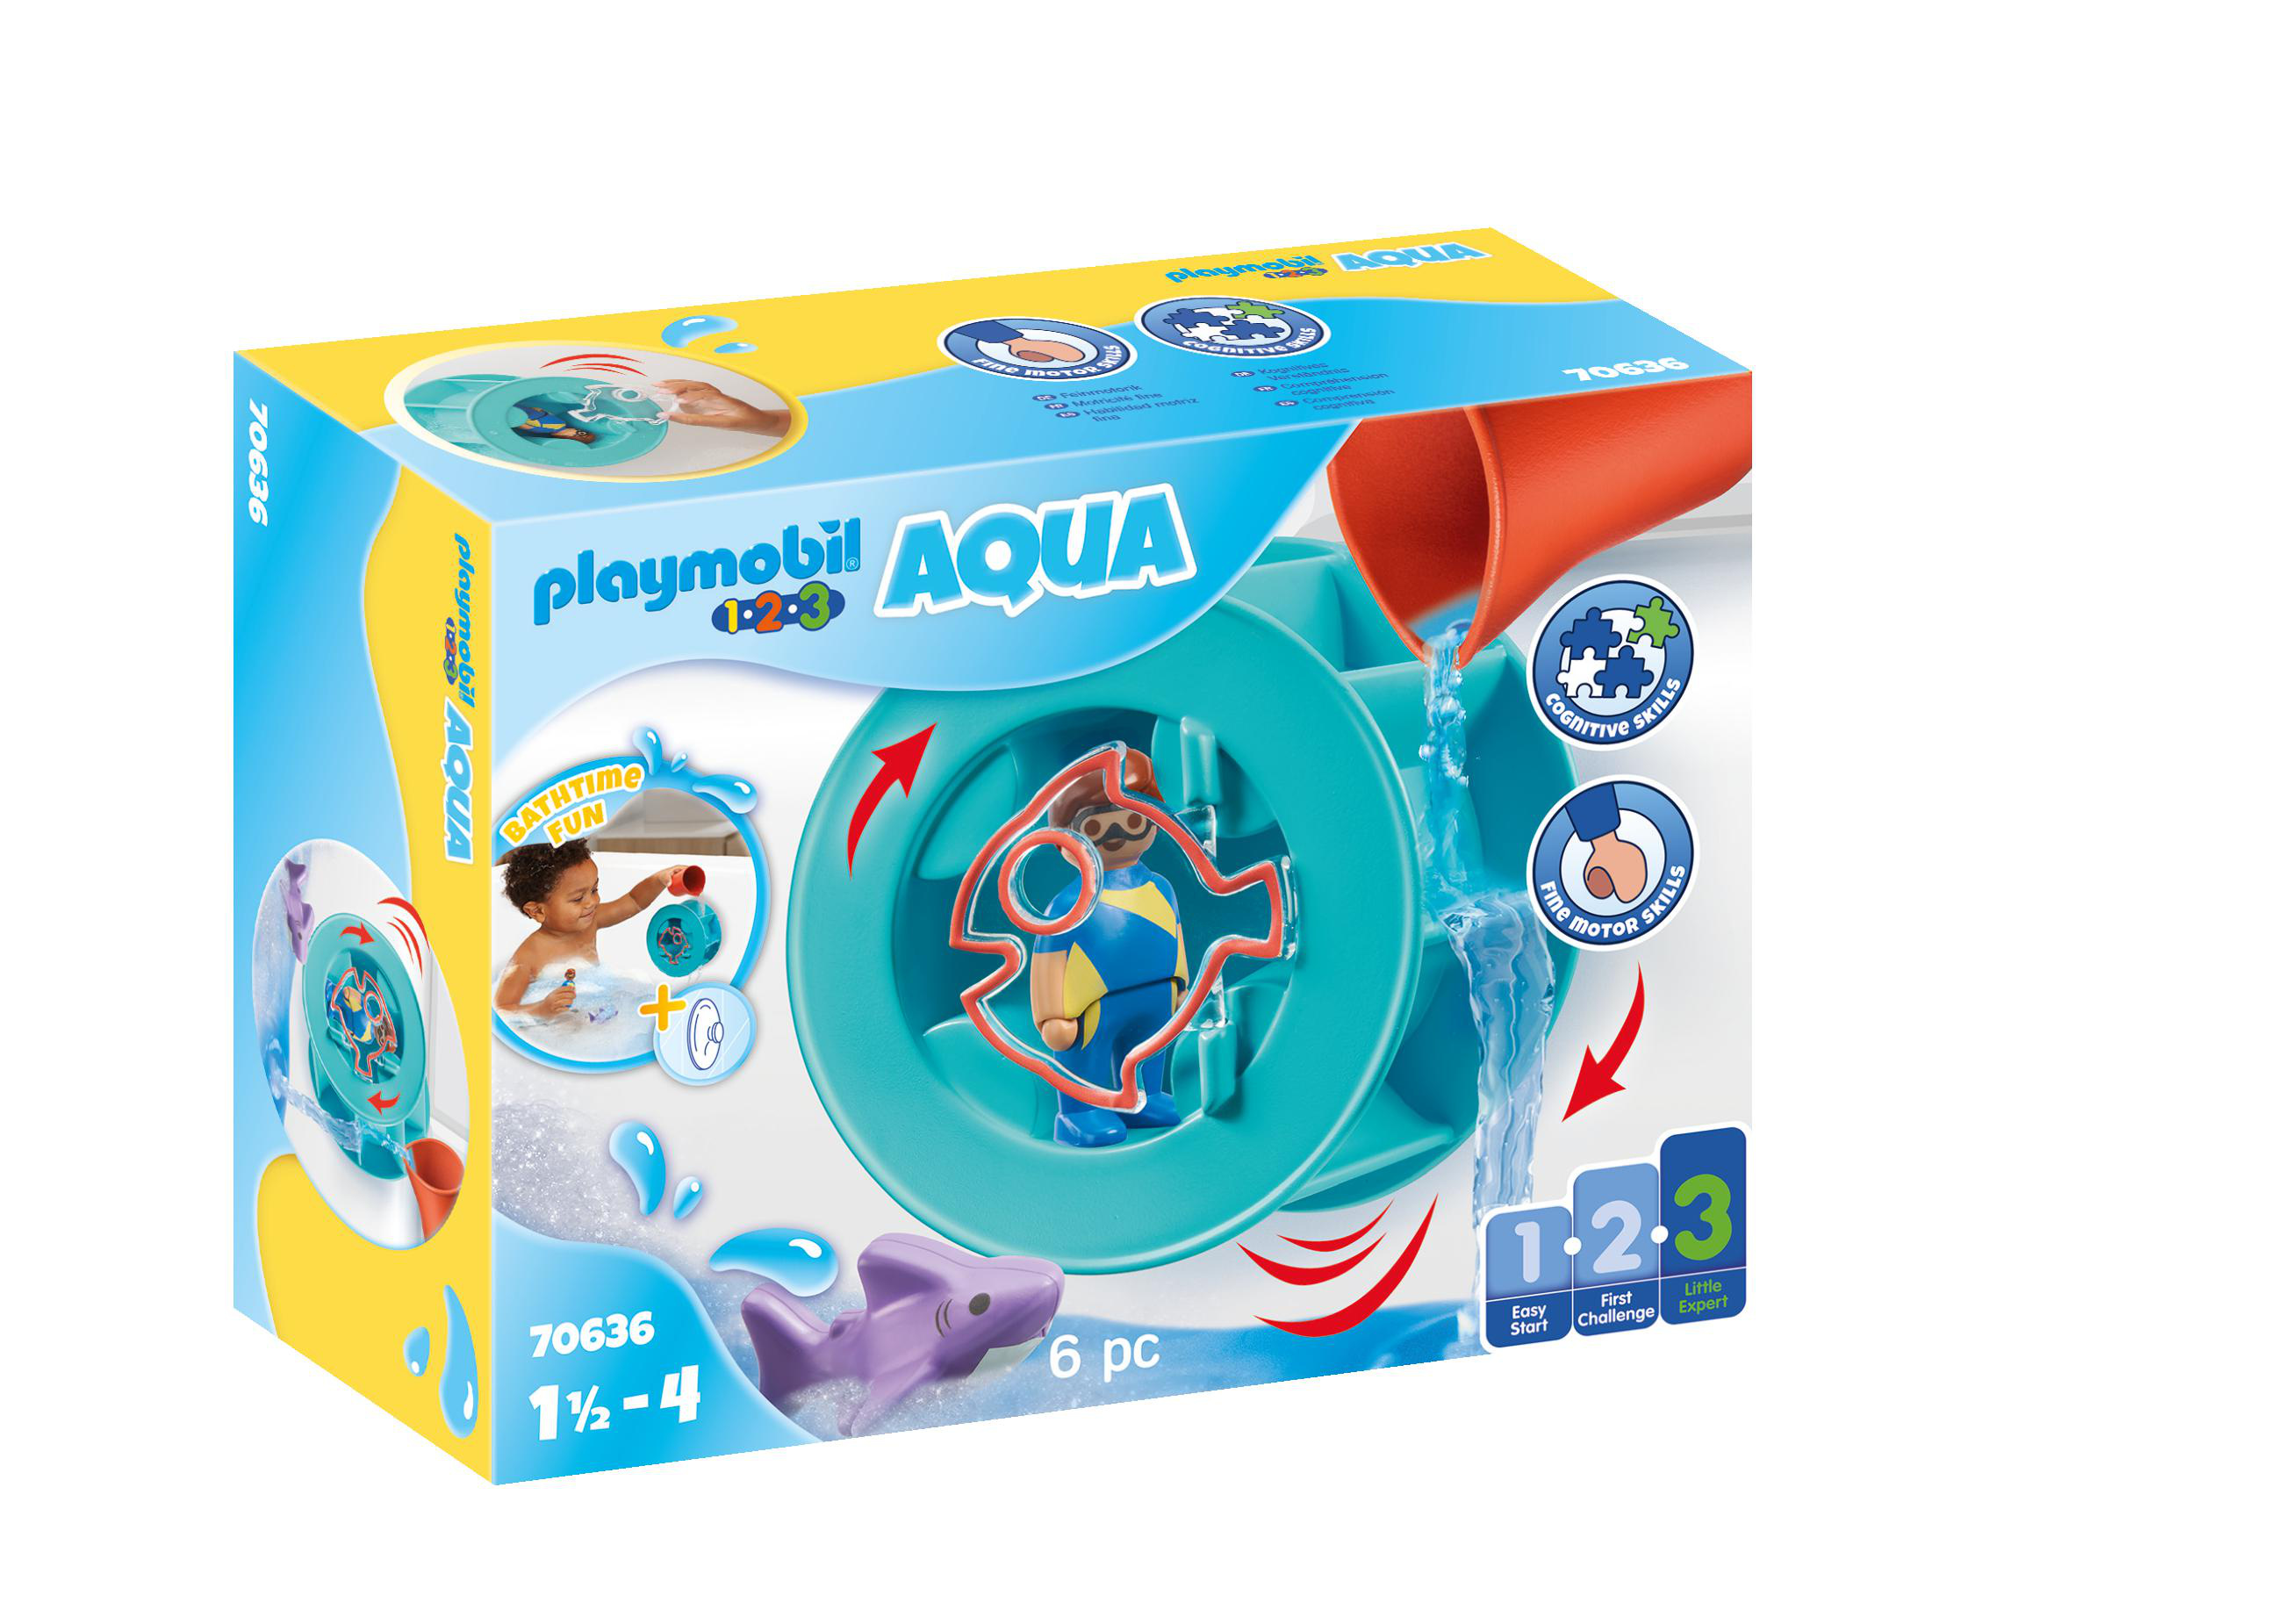 Playmobil® 123 AQUA Bac de salle de bain avec toboggan aquatique 70635